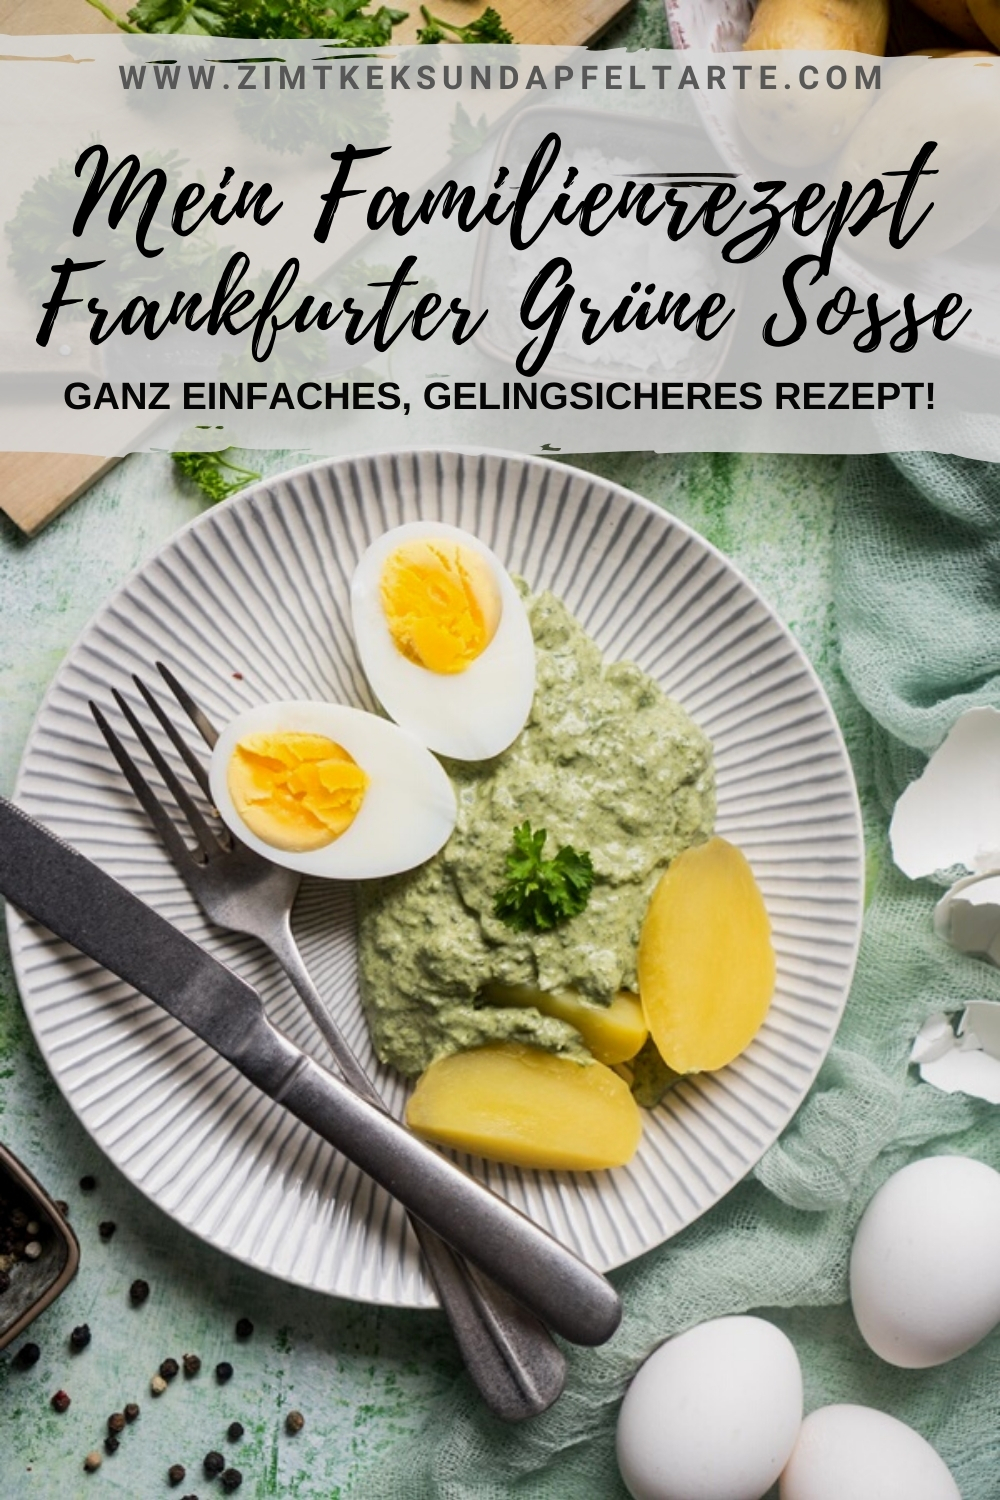 Mein einfaches und gelingsicheres Rezept für Frankfurter Grüne Soße - Grie Soß - ganz einfach zum selber machen! Tolle Kräutersoße zu Eiern oder Tafelspitz oder Schnitzel, ganz einfach - ganz ohne kochen!